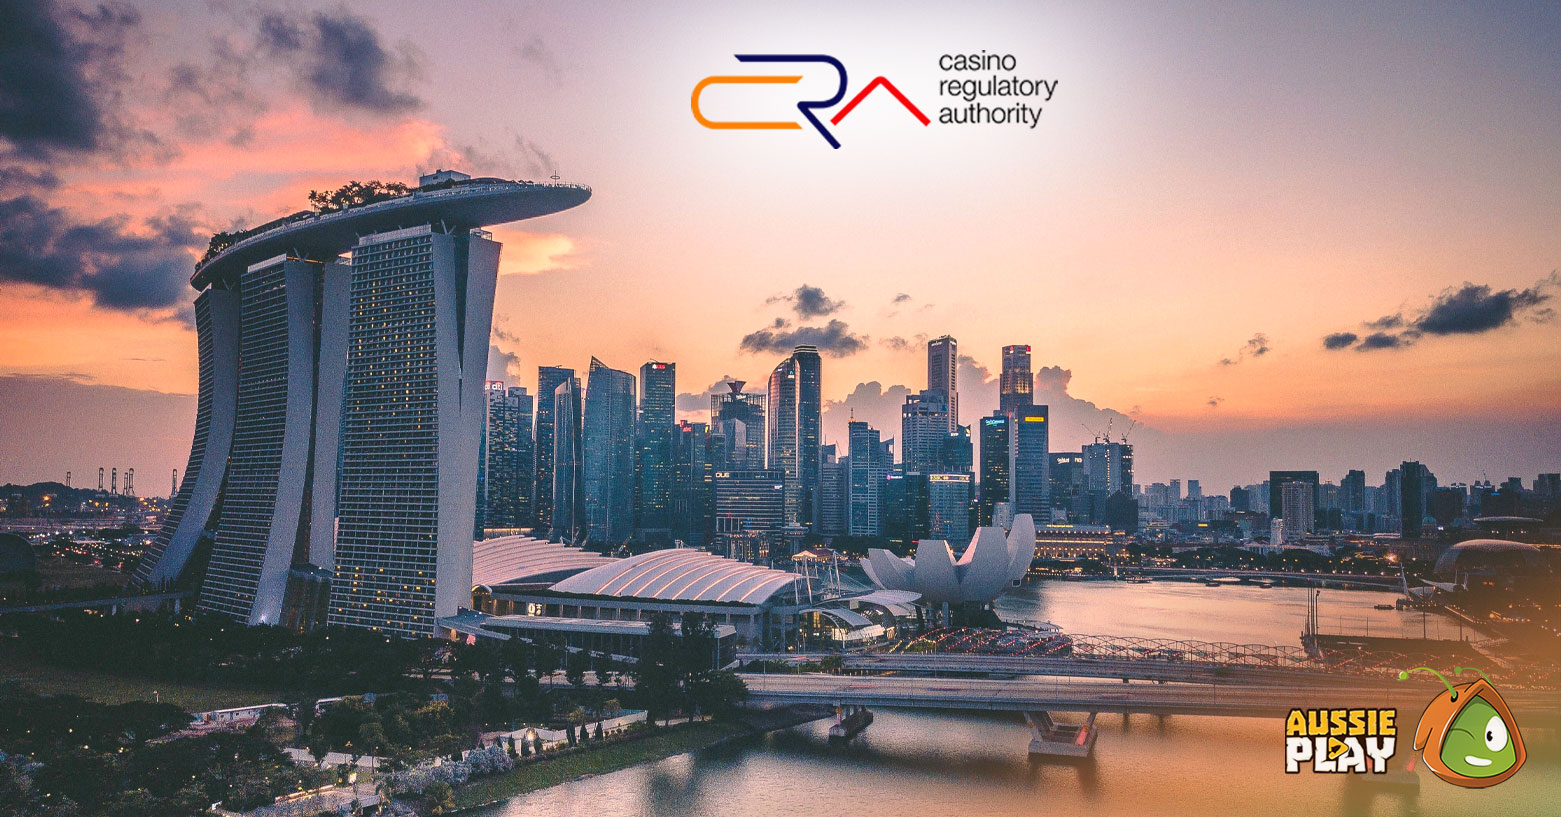 Casino Regulatory Authority in Singapore